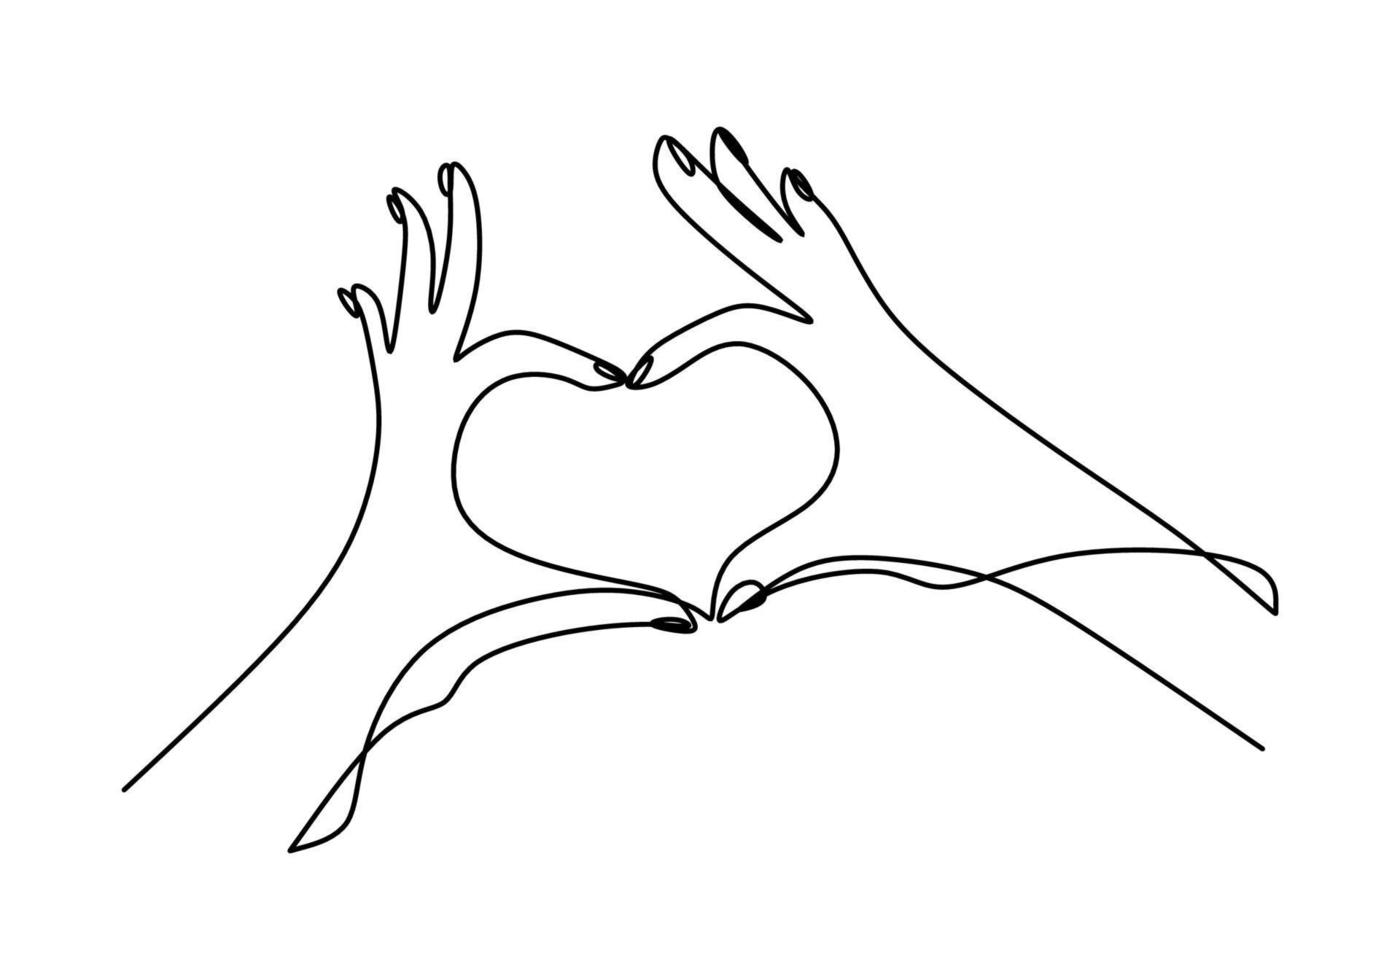 eine durchgehende Strichzeichnung von Händen, die Liebeszeichen zeigen. Hand der Frau, die Liebessymbol mit dem Halten ihres kleinen Finger-Minimalismusentwurfs lokalisiert auf weißem Hintergrund gibt. Vektorillustration vektor